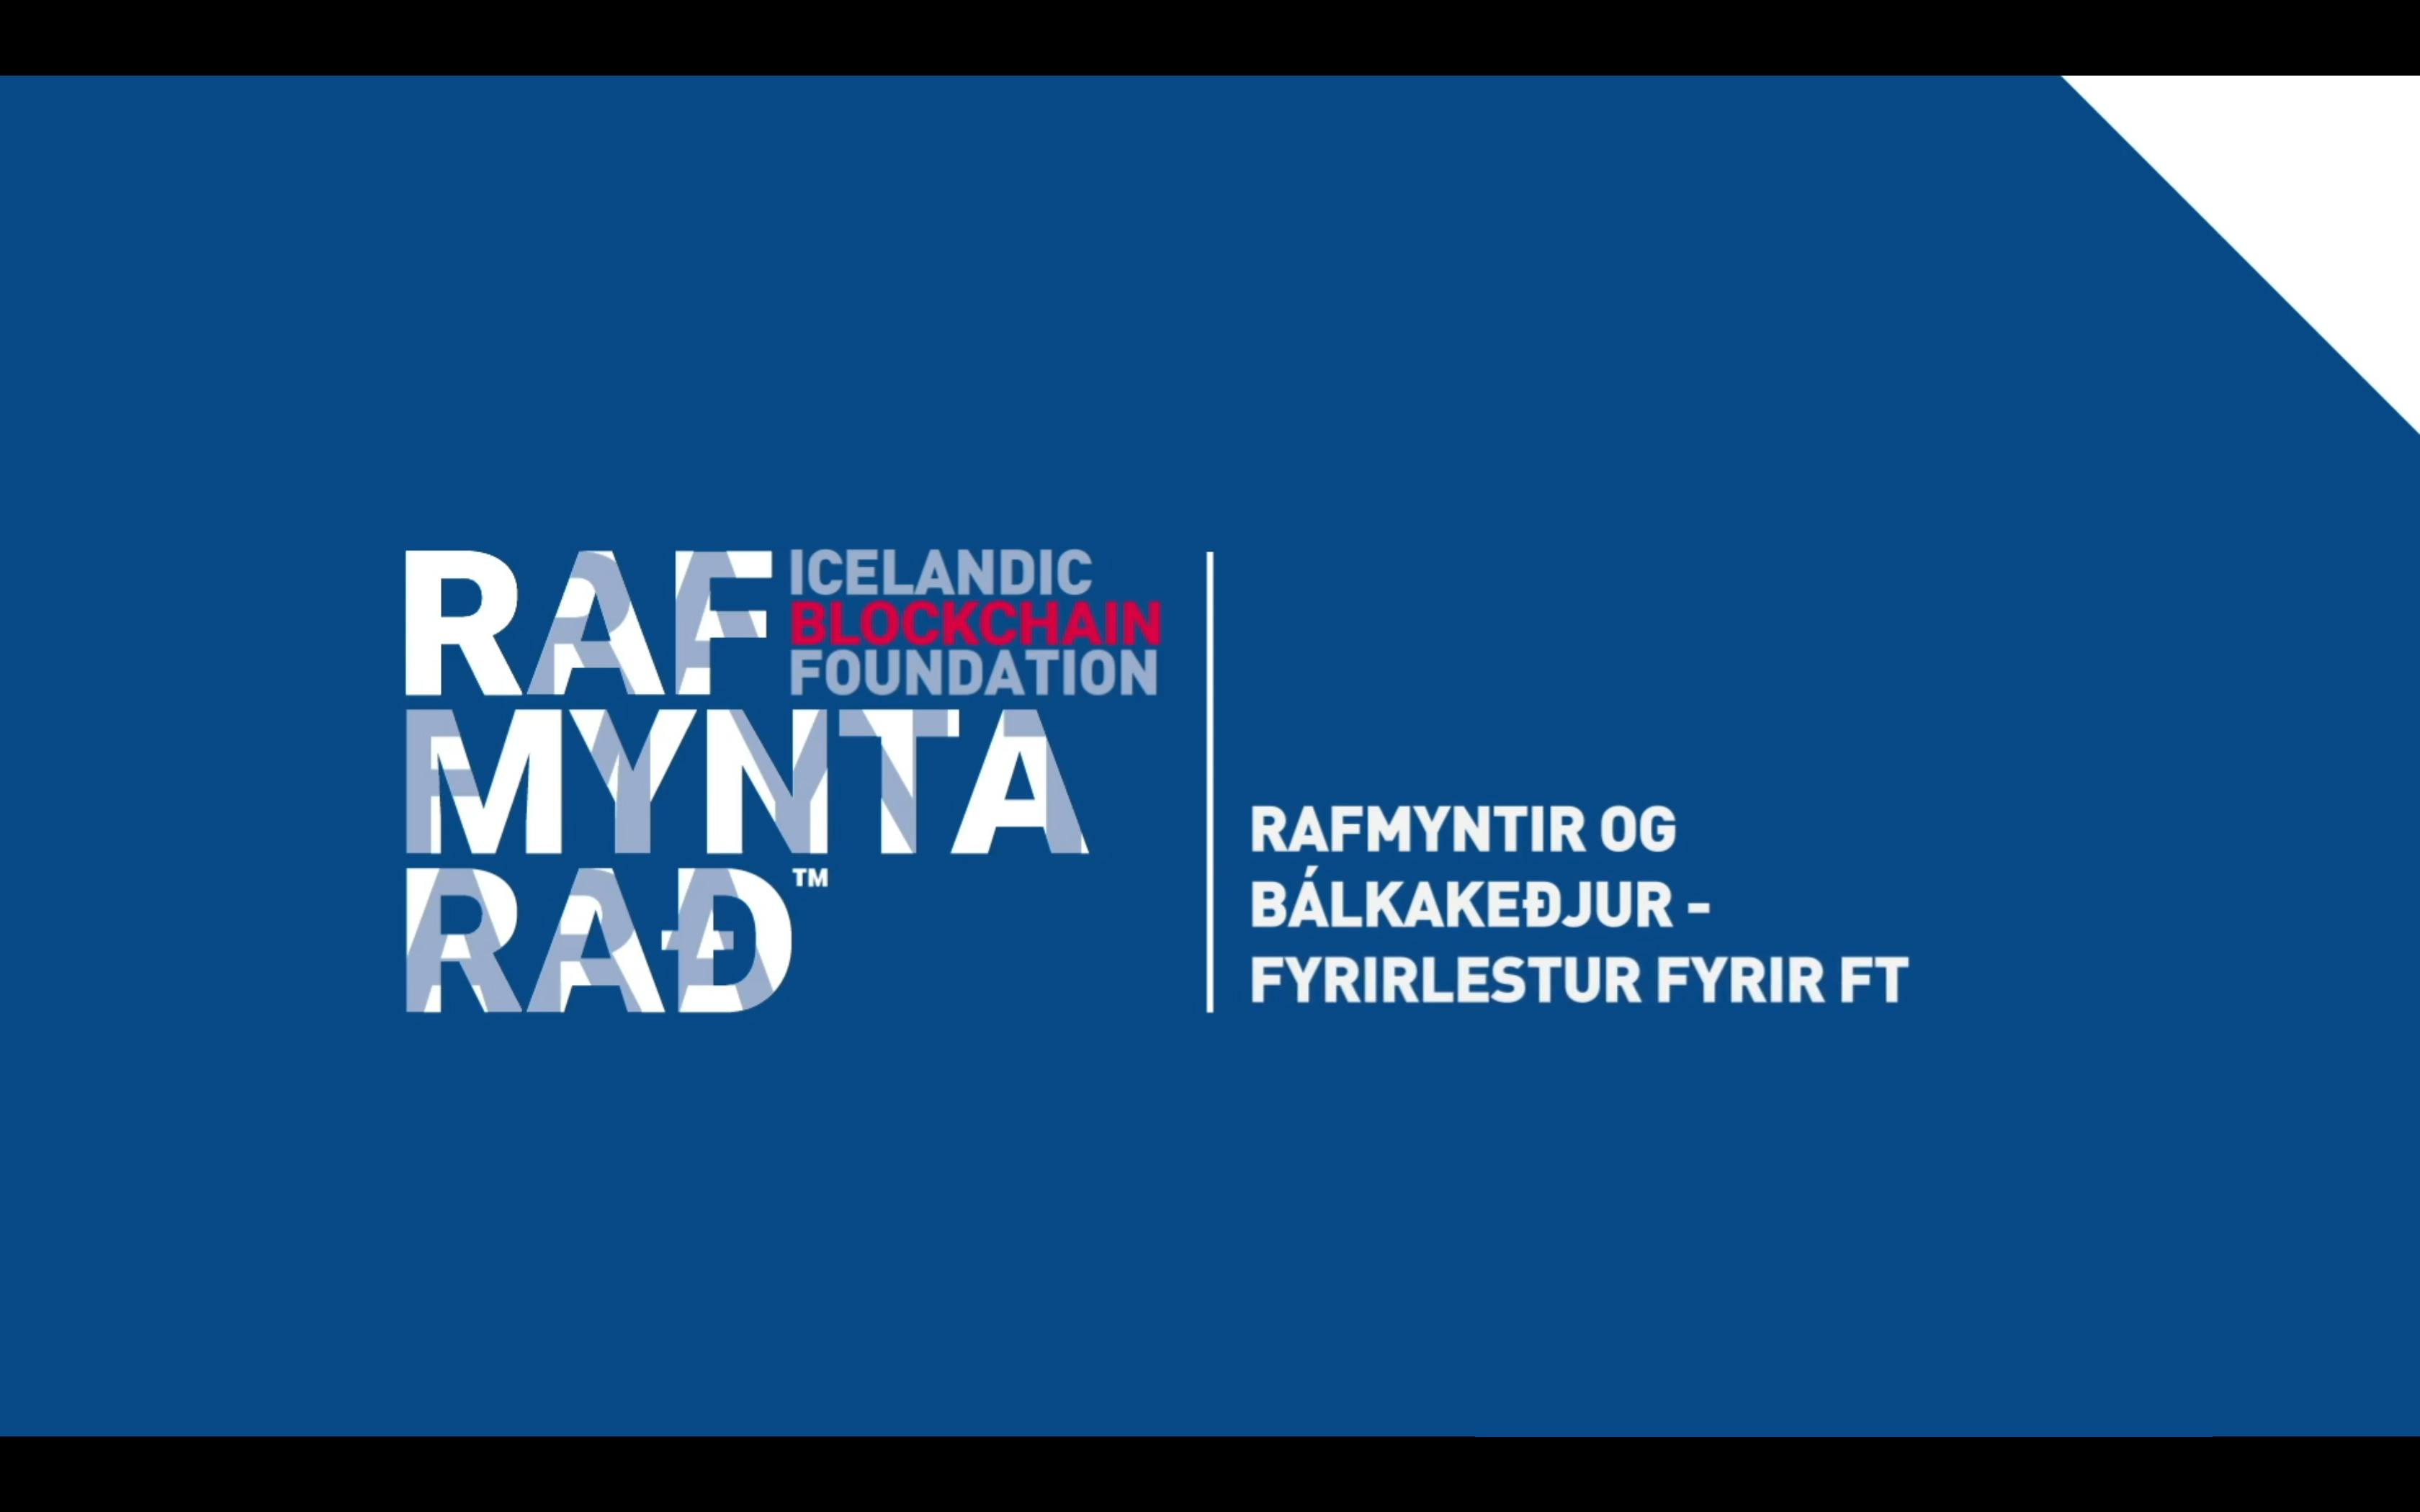 Rafmyntir og Bálkakeðjur - Fyrirlestur fyrir FT